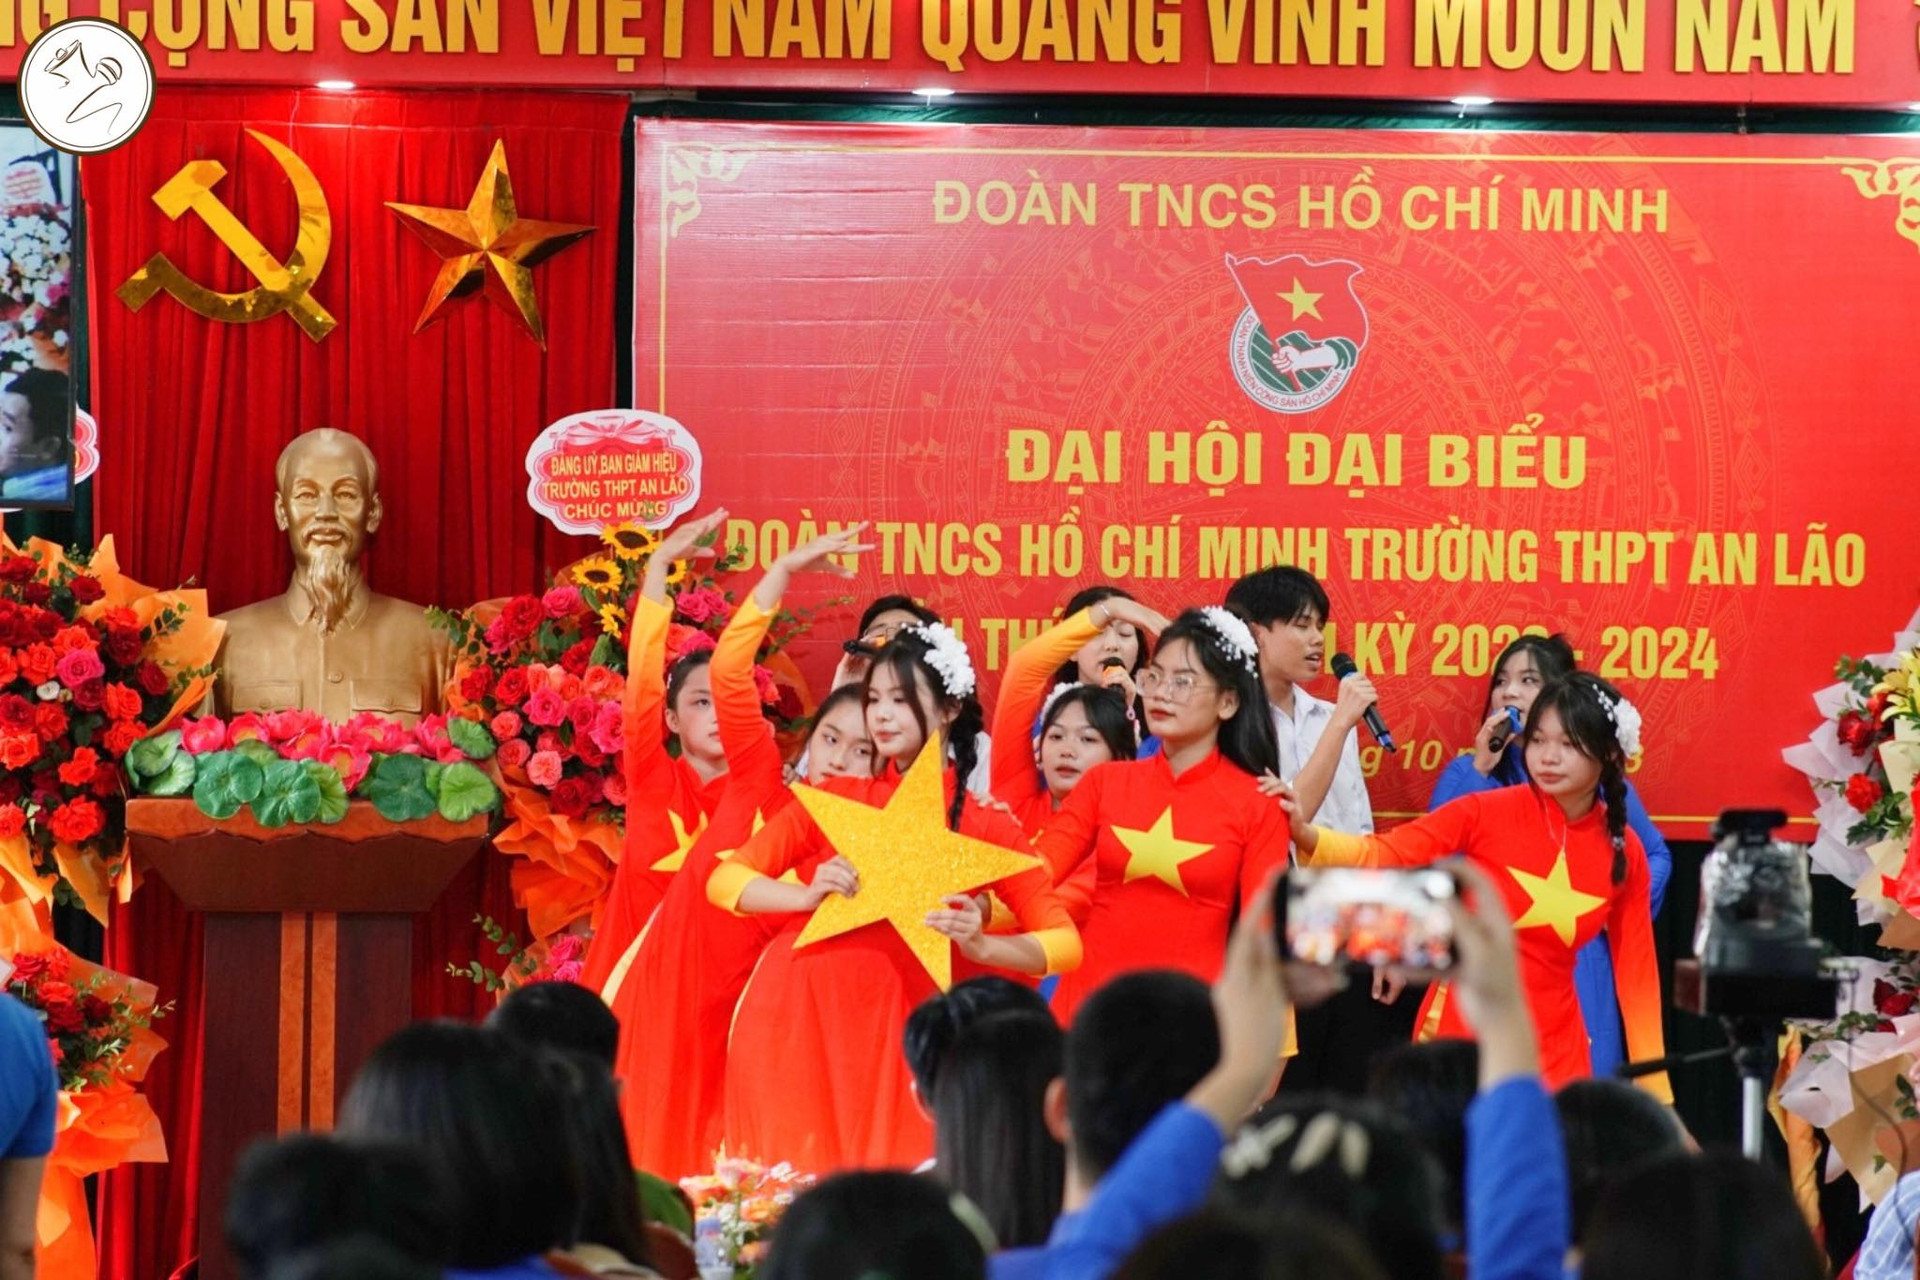 Đại hội đại biểu Đoàn TNCS Xì Gòn ngôi trường trung học phổ thông An Lão nhiệm kỳ 2023 – 2024 | Trường Trung Học Phổ Thông An Lão